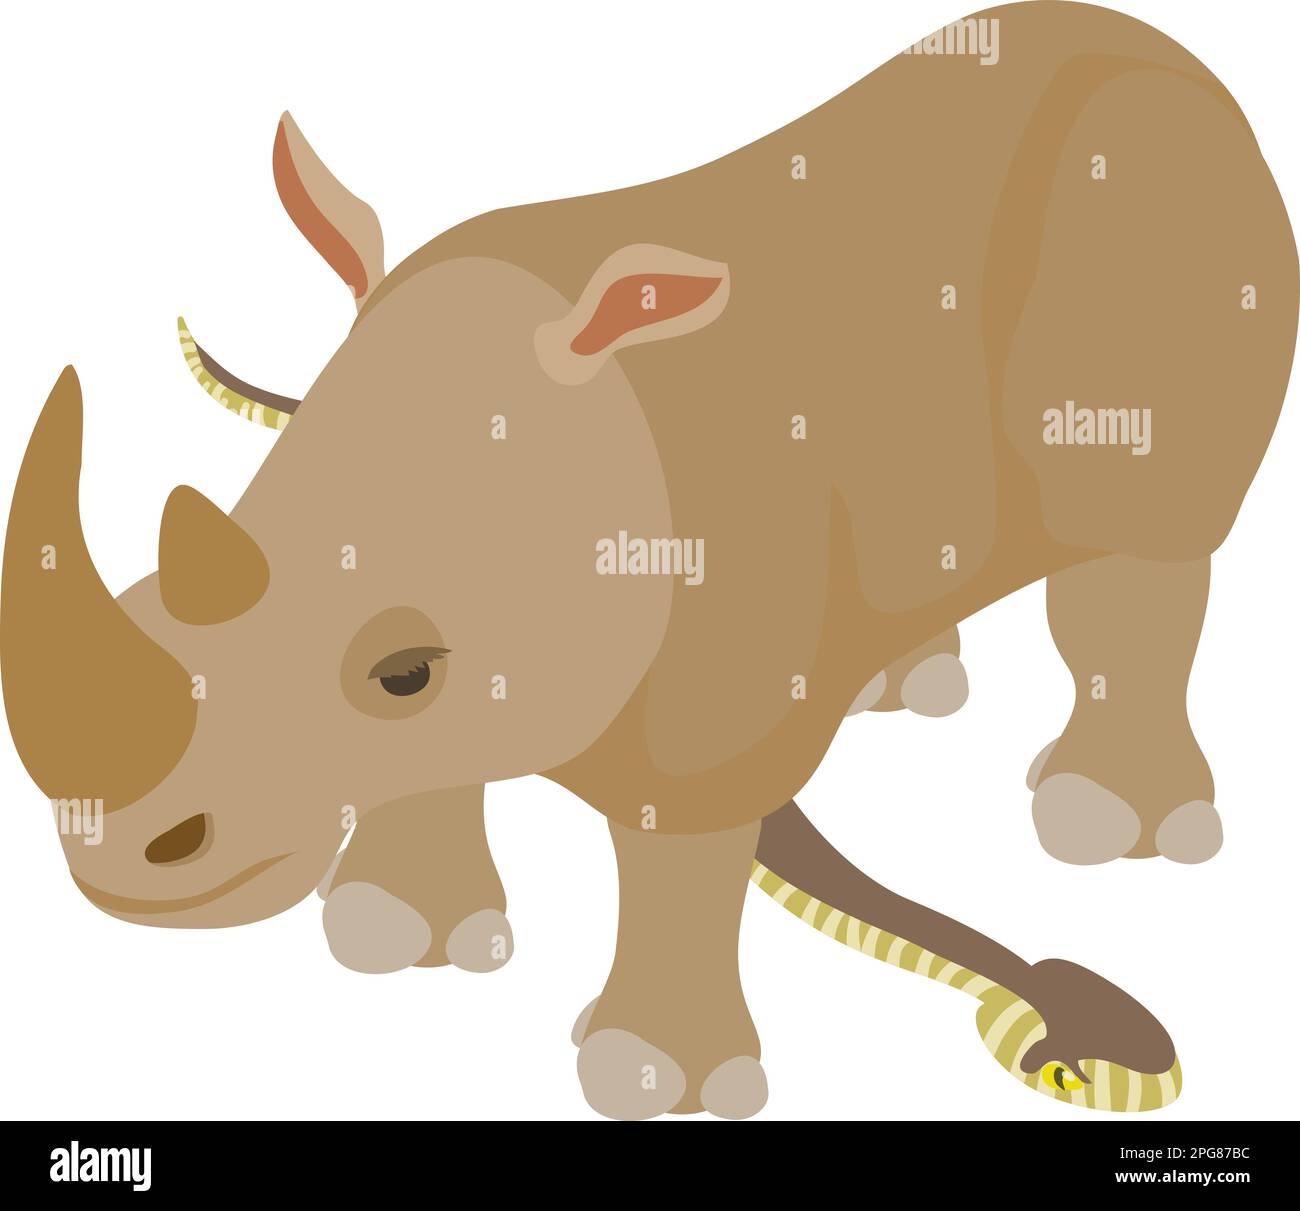 Icona cura animale vettore isometrico. Vipera comune strisciante e grande icona rinoceronte. Concetto di diversità biologica Illustrazione Vettoriale